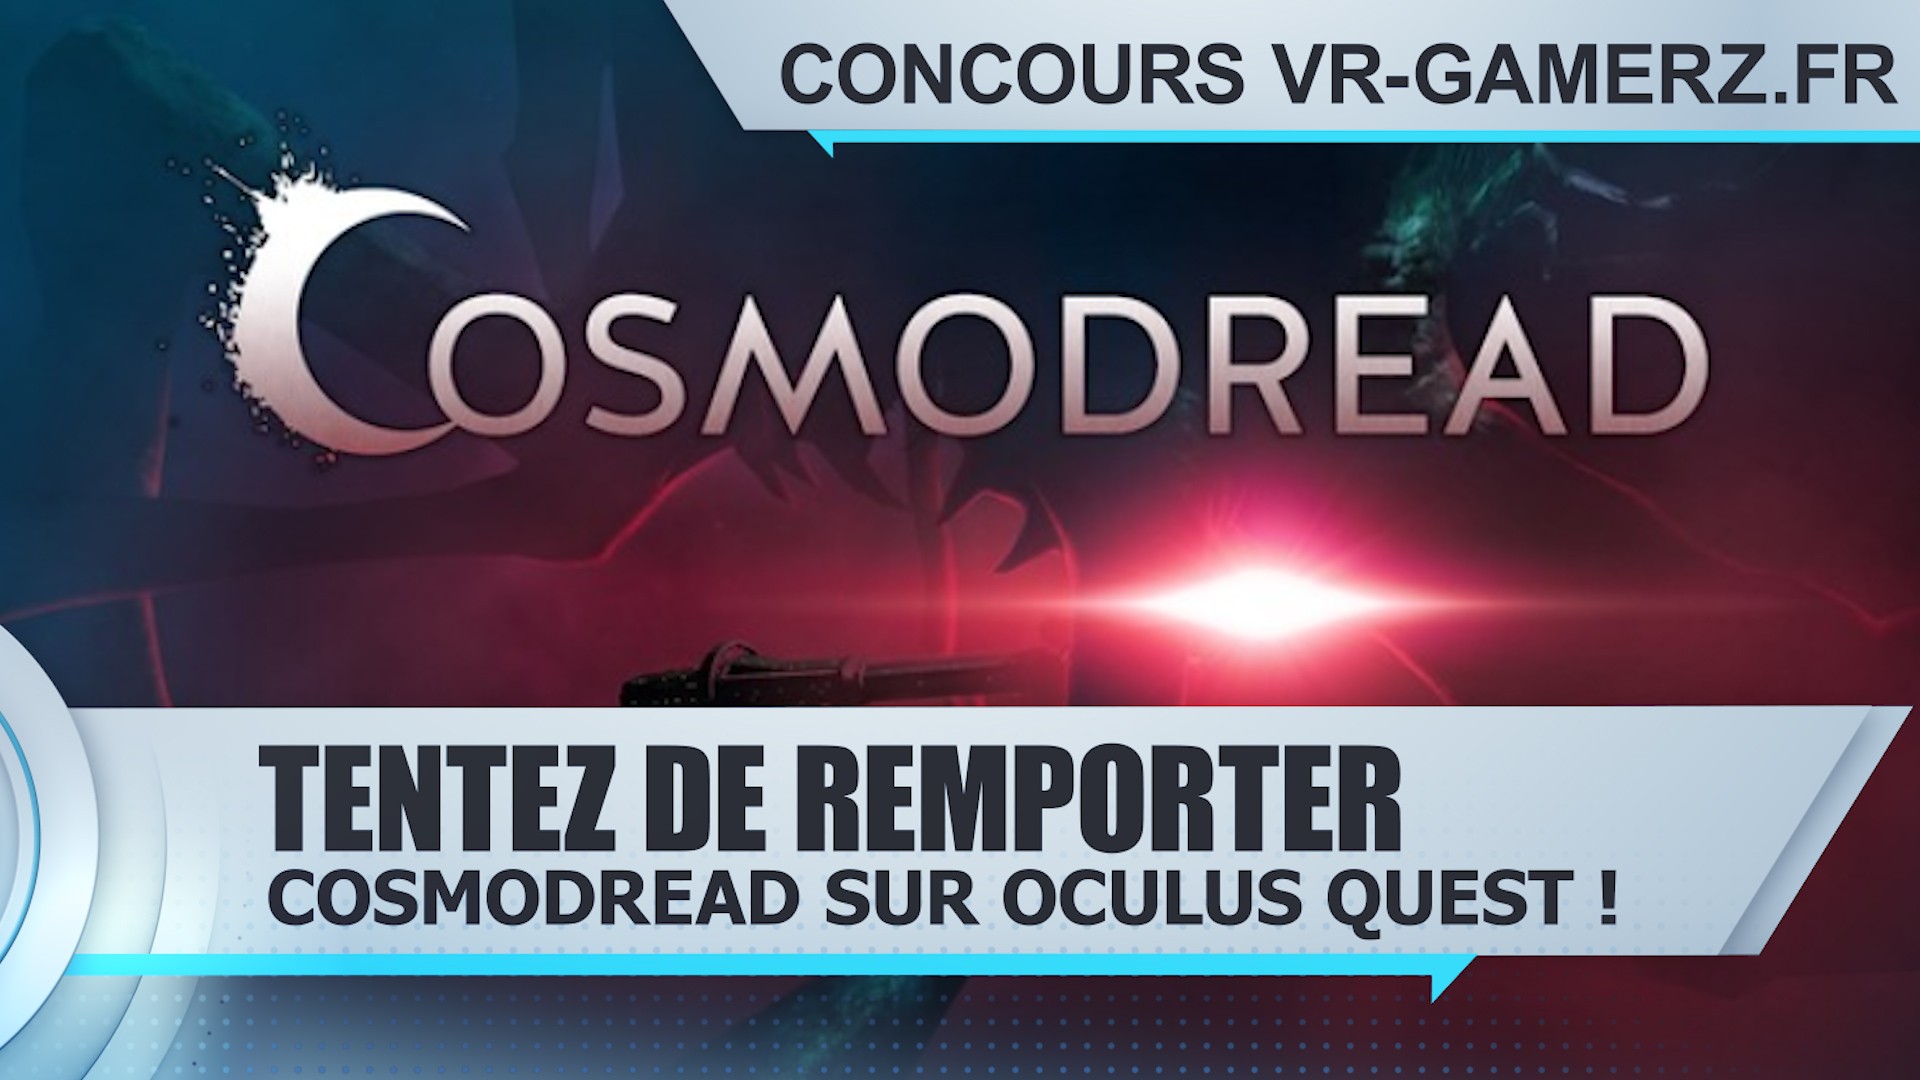 Résultat Concours : Tentez de remporter Cosmodread sur Oculus quest !